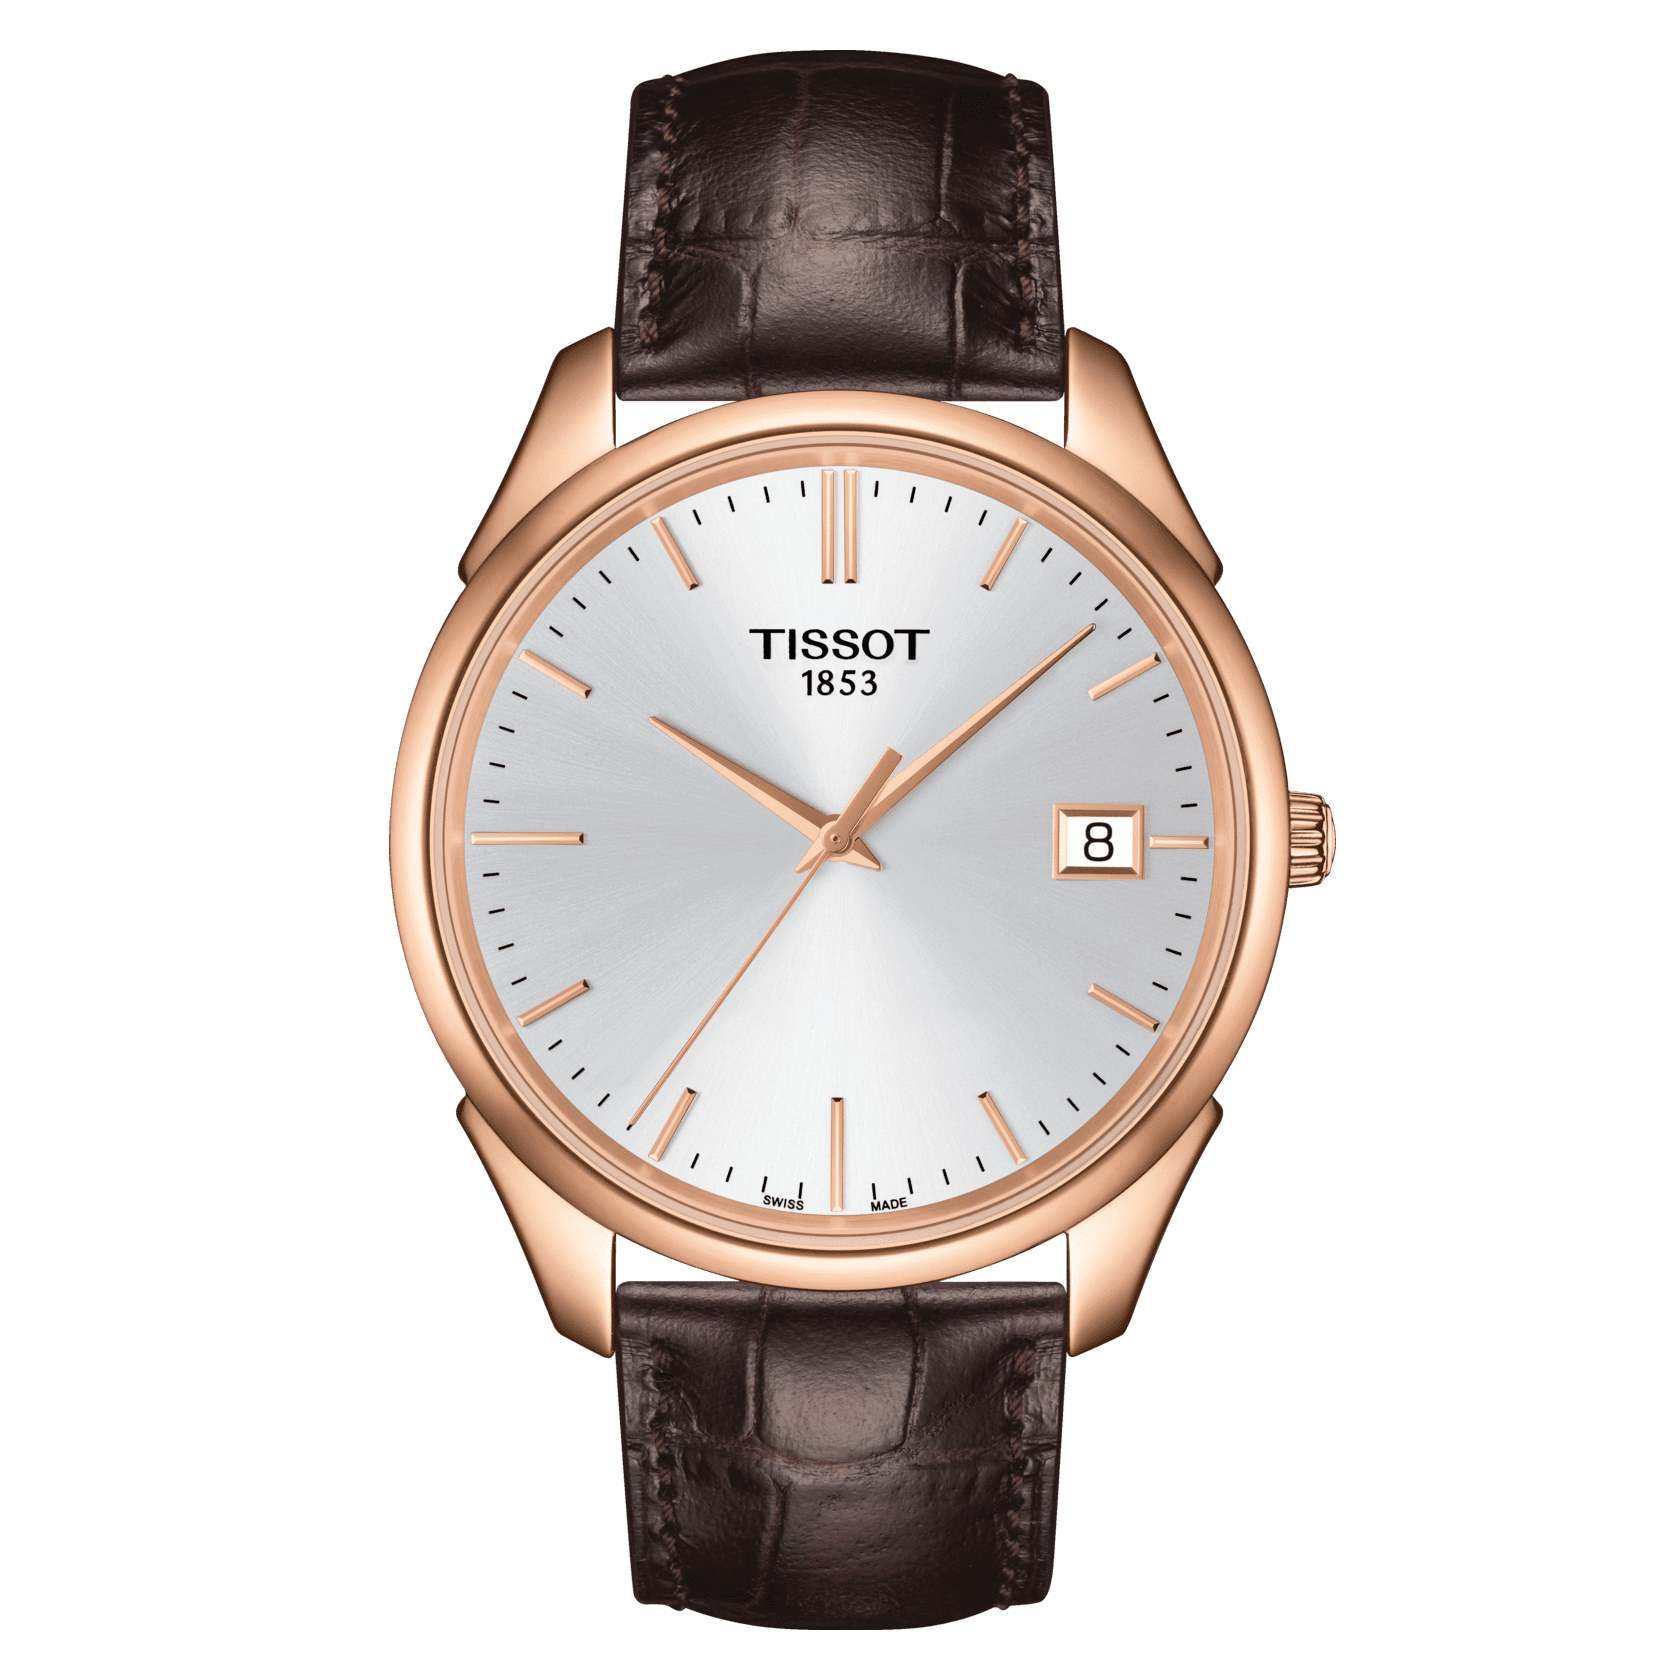 Replica Cartier Santos Watch